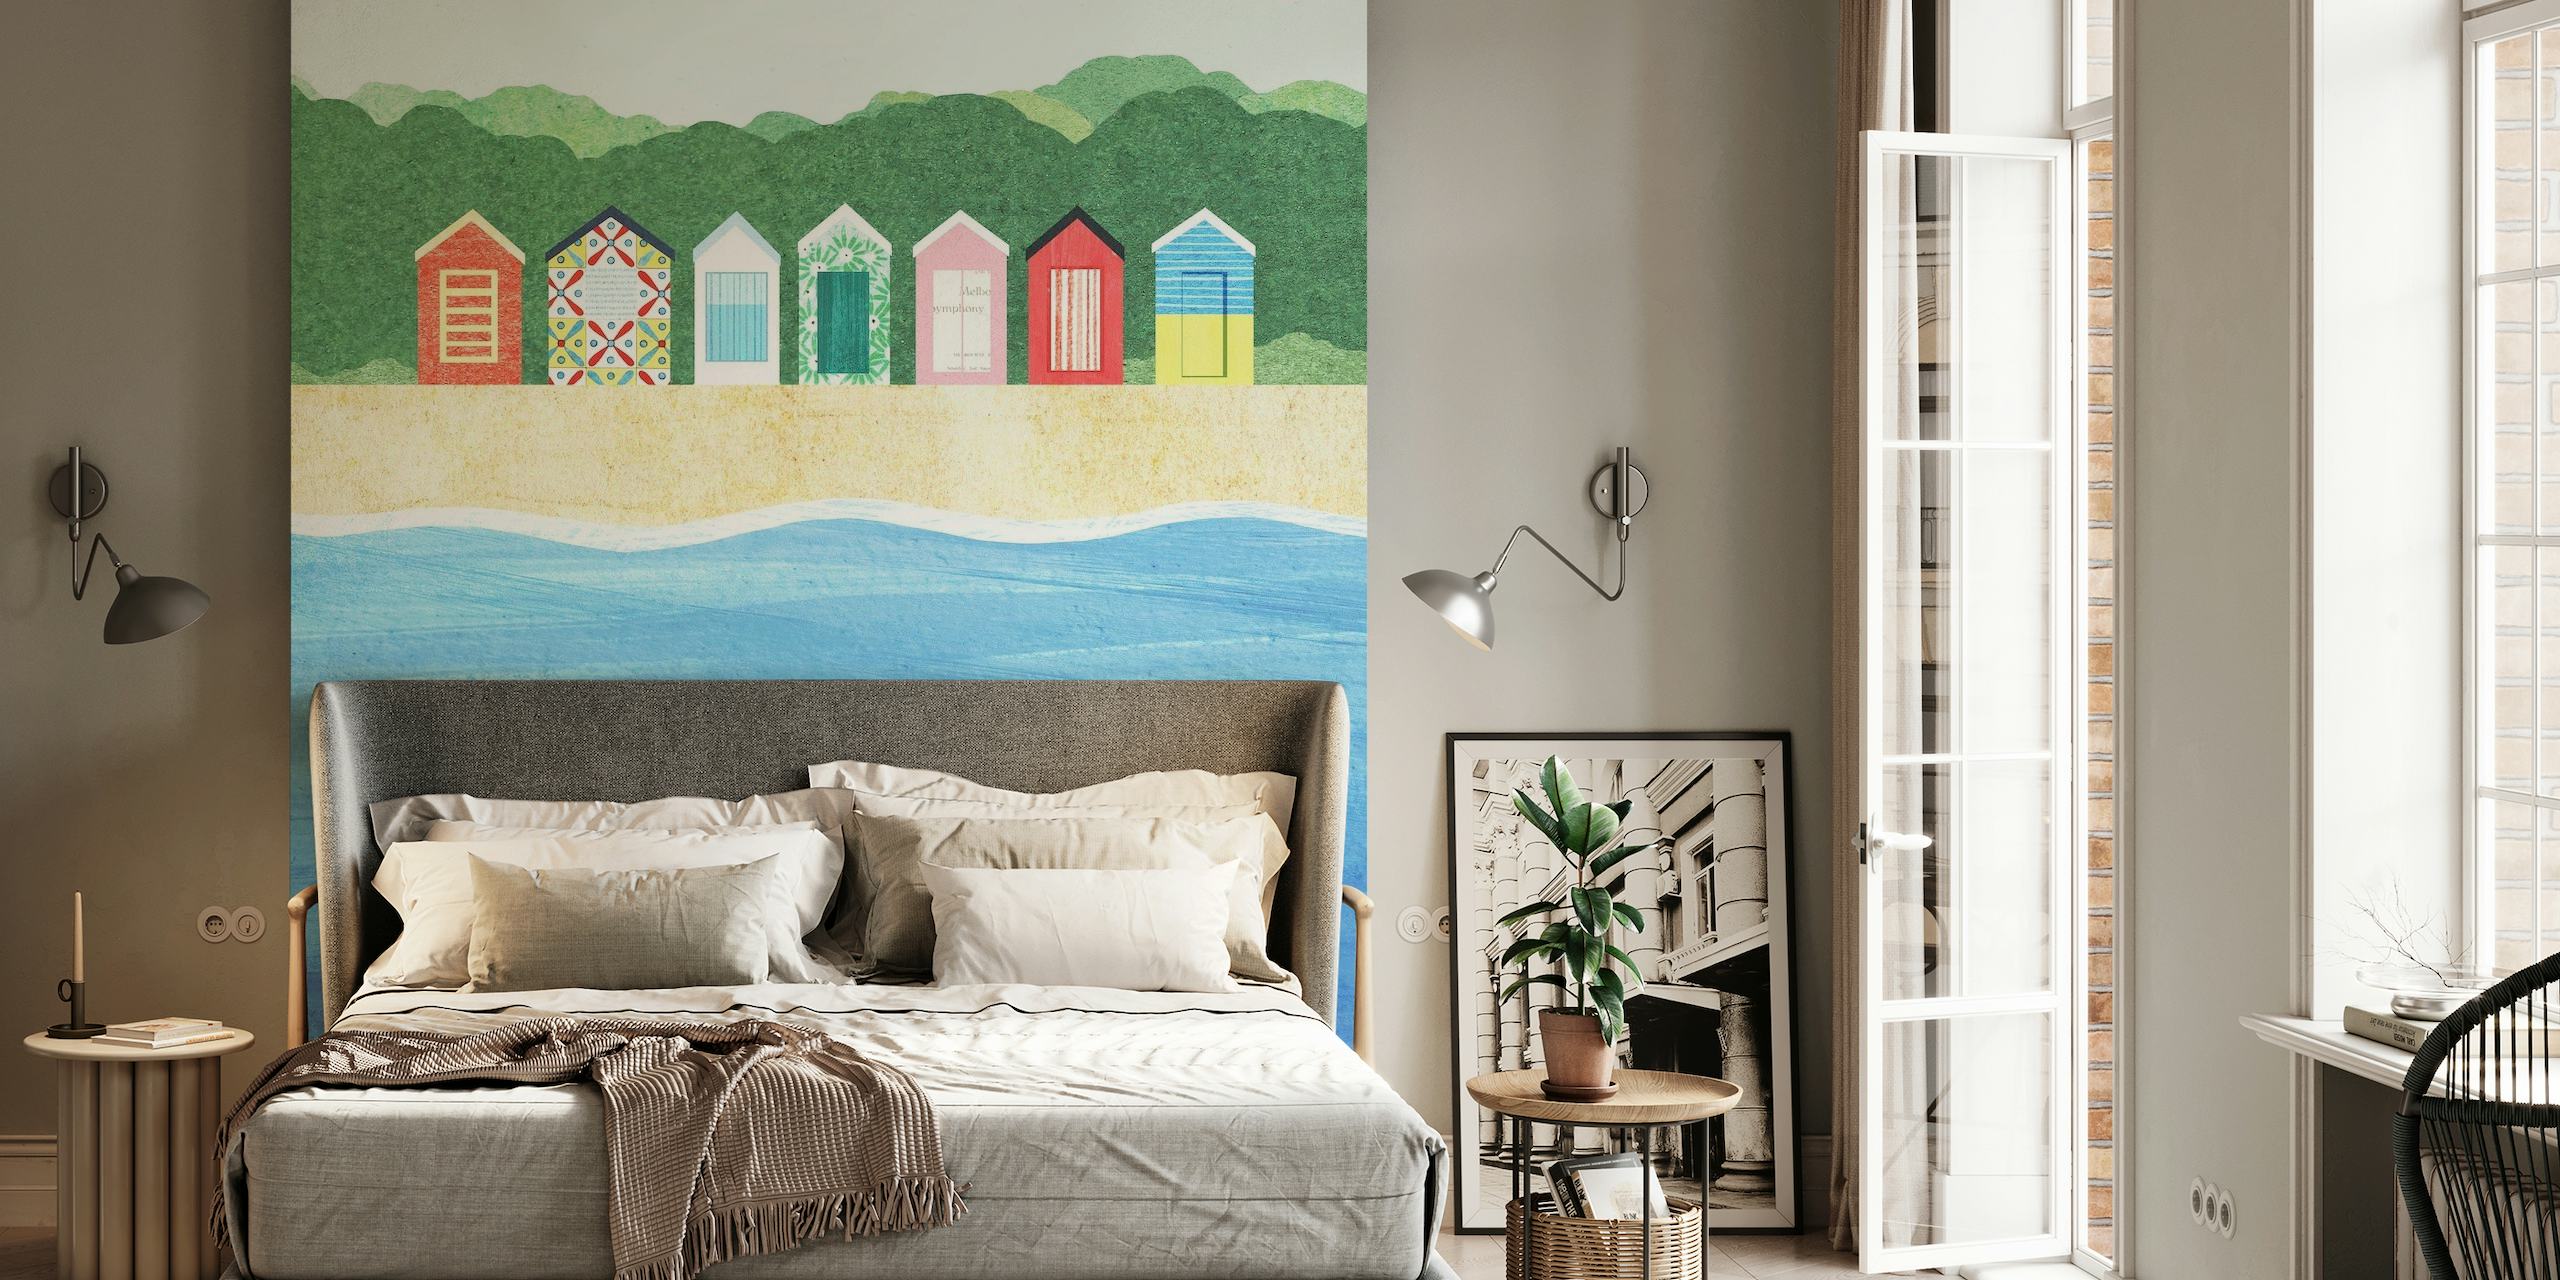 Farbenfrohes Wandbild mit Strandhütten, die Strandhütten mit ruhigem Meerblick zeigen.